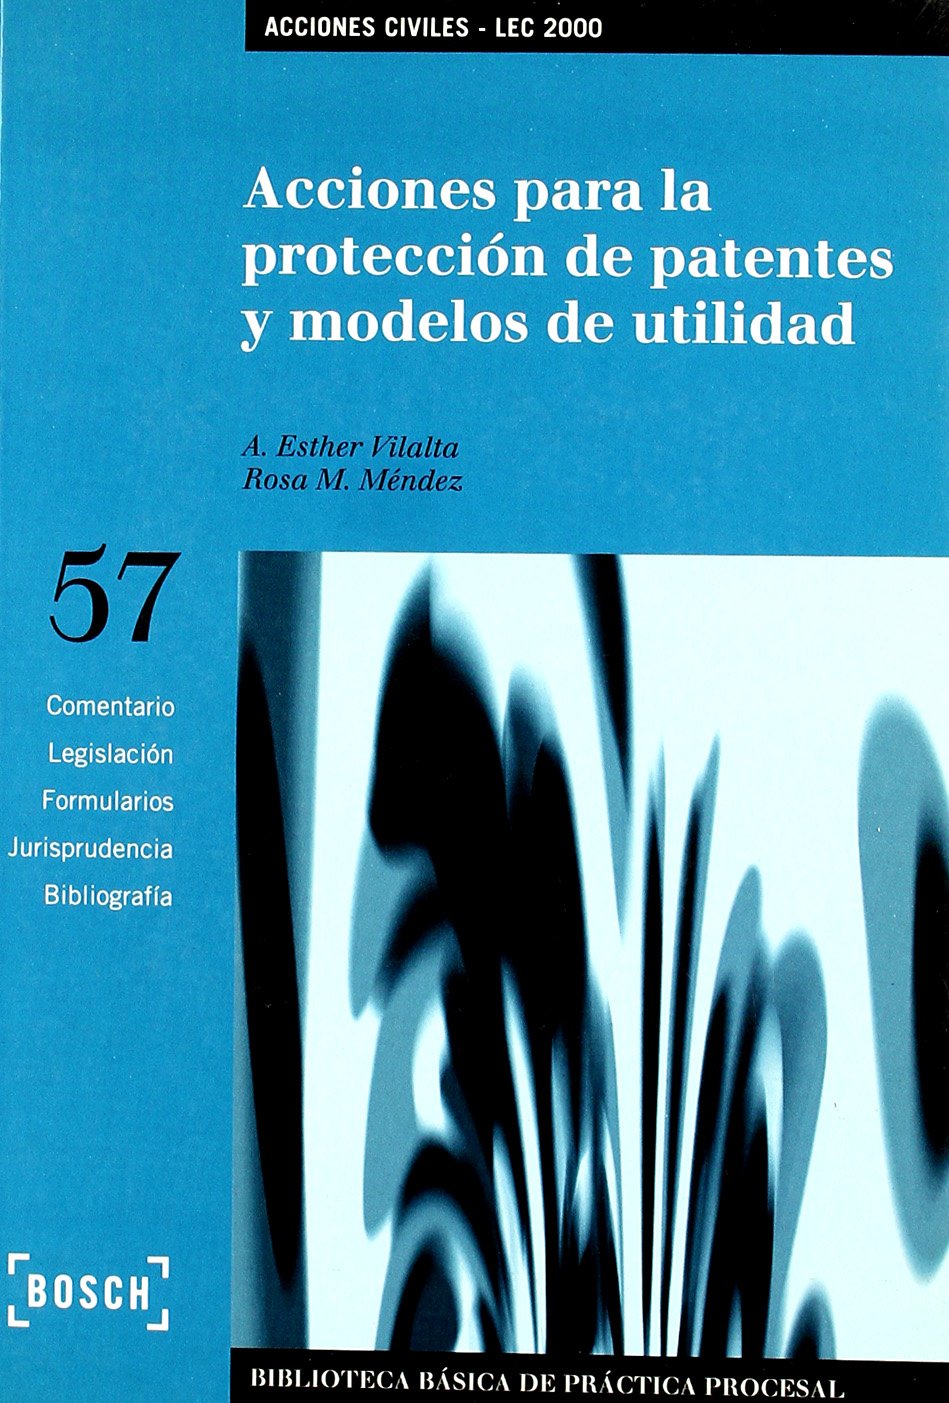 Acciones para la protección de patentes y modelos de utilidad